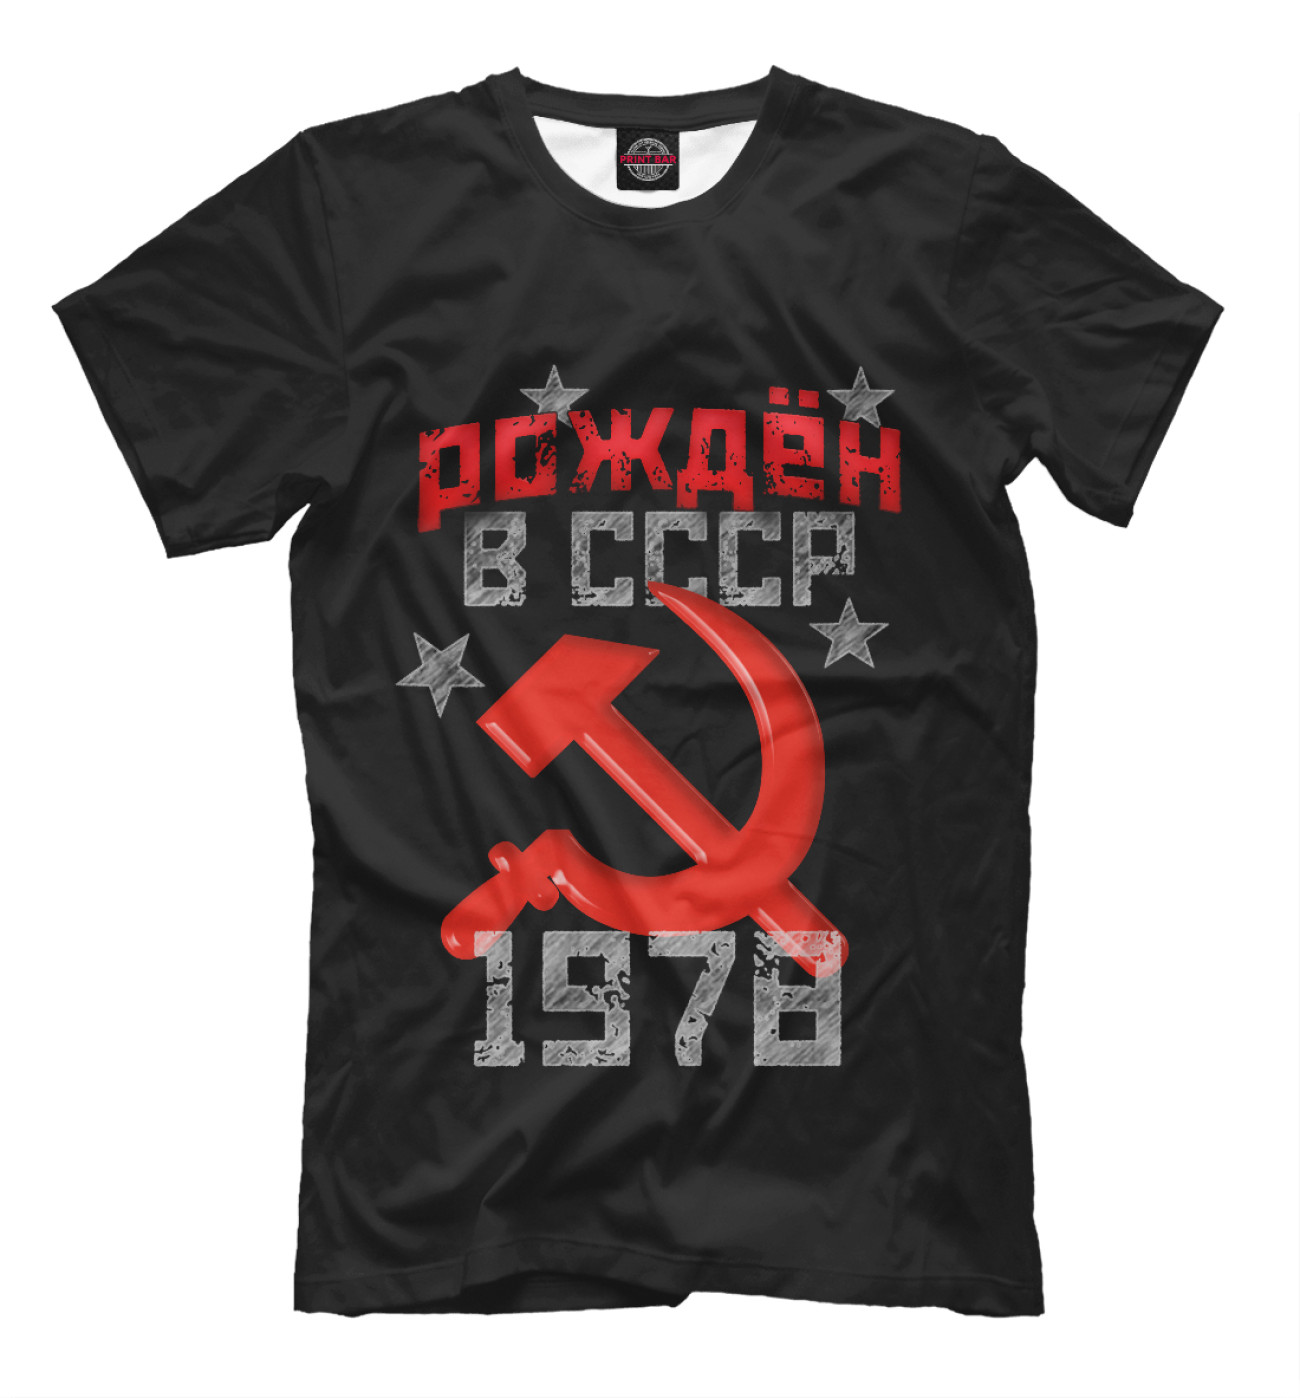 Мужская Футболка Рожден в СССР 1978, артикул: DSV-479079-fut-2